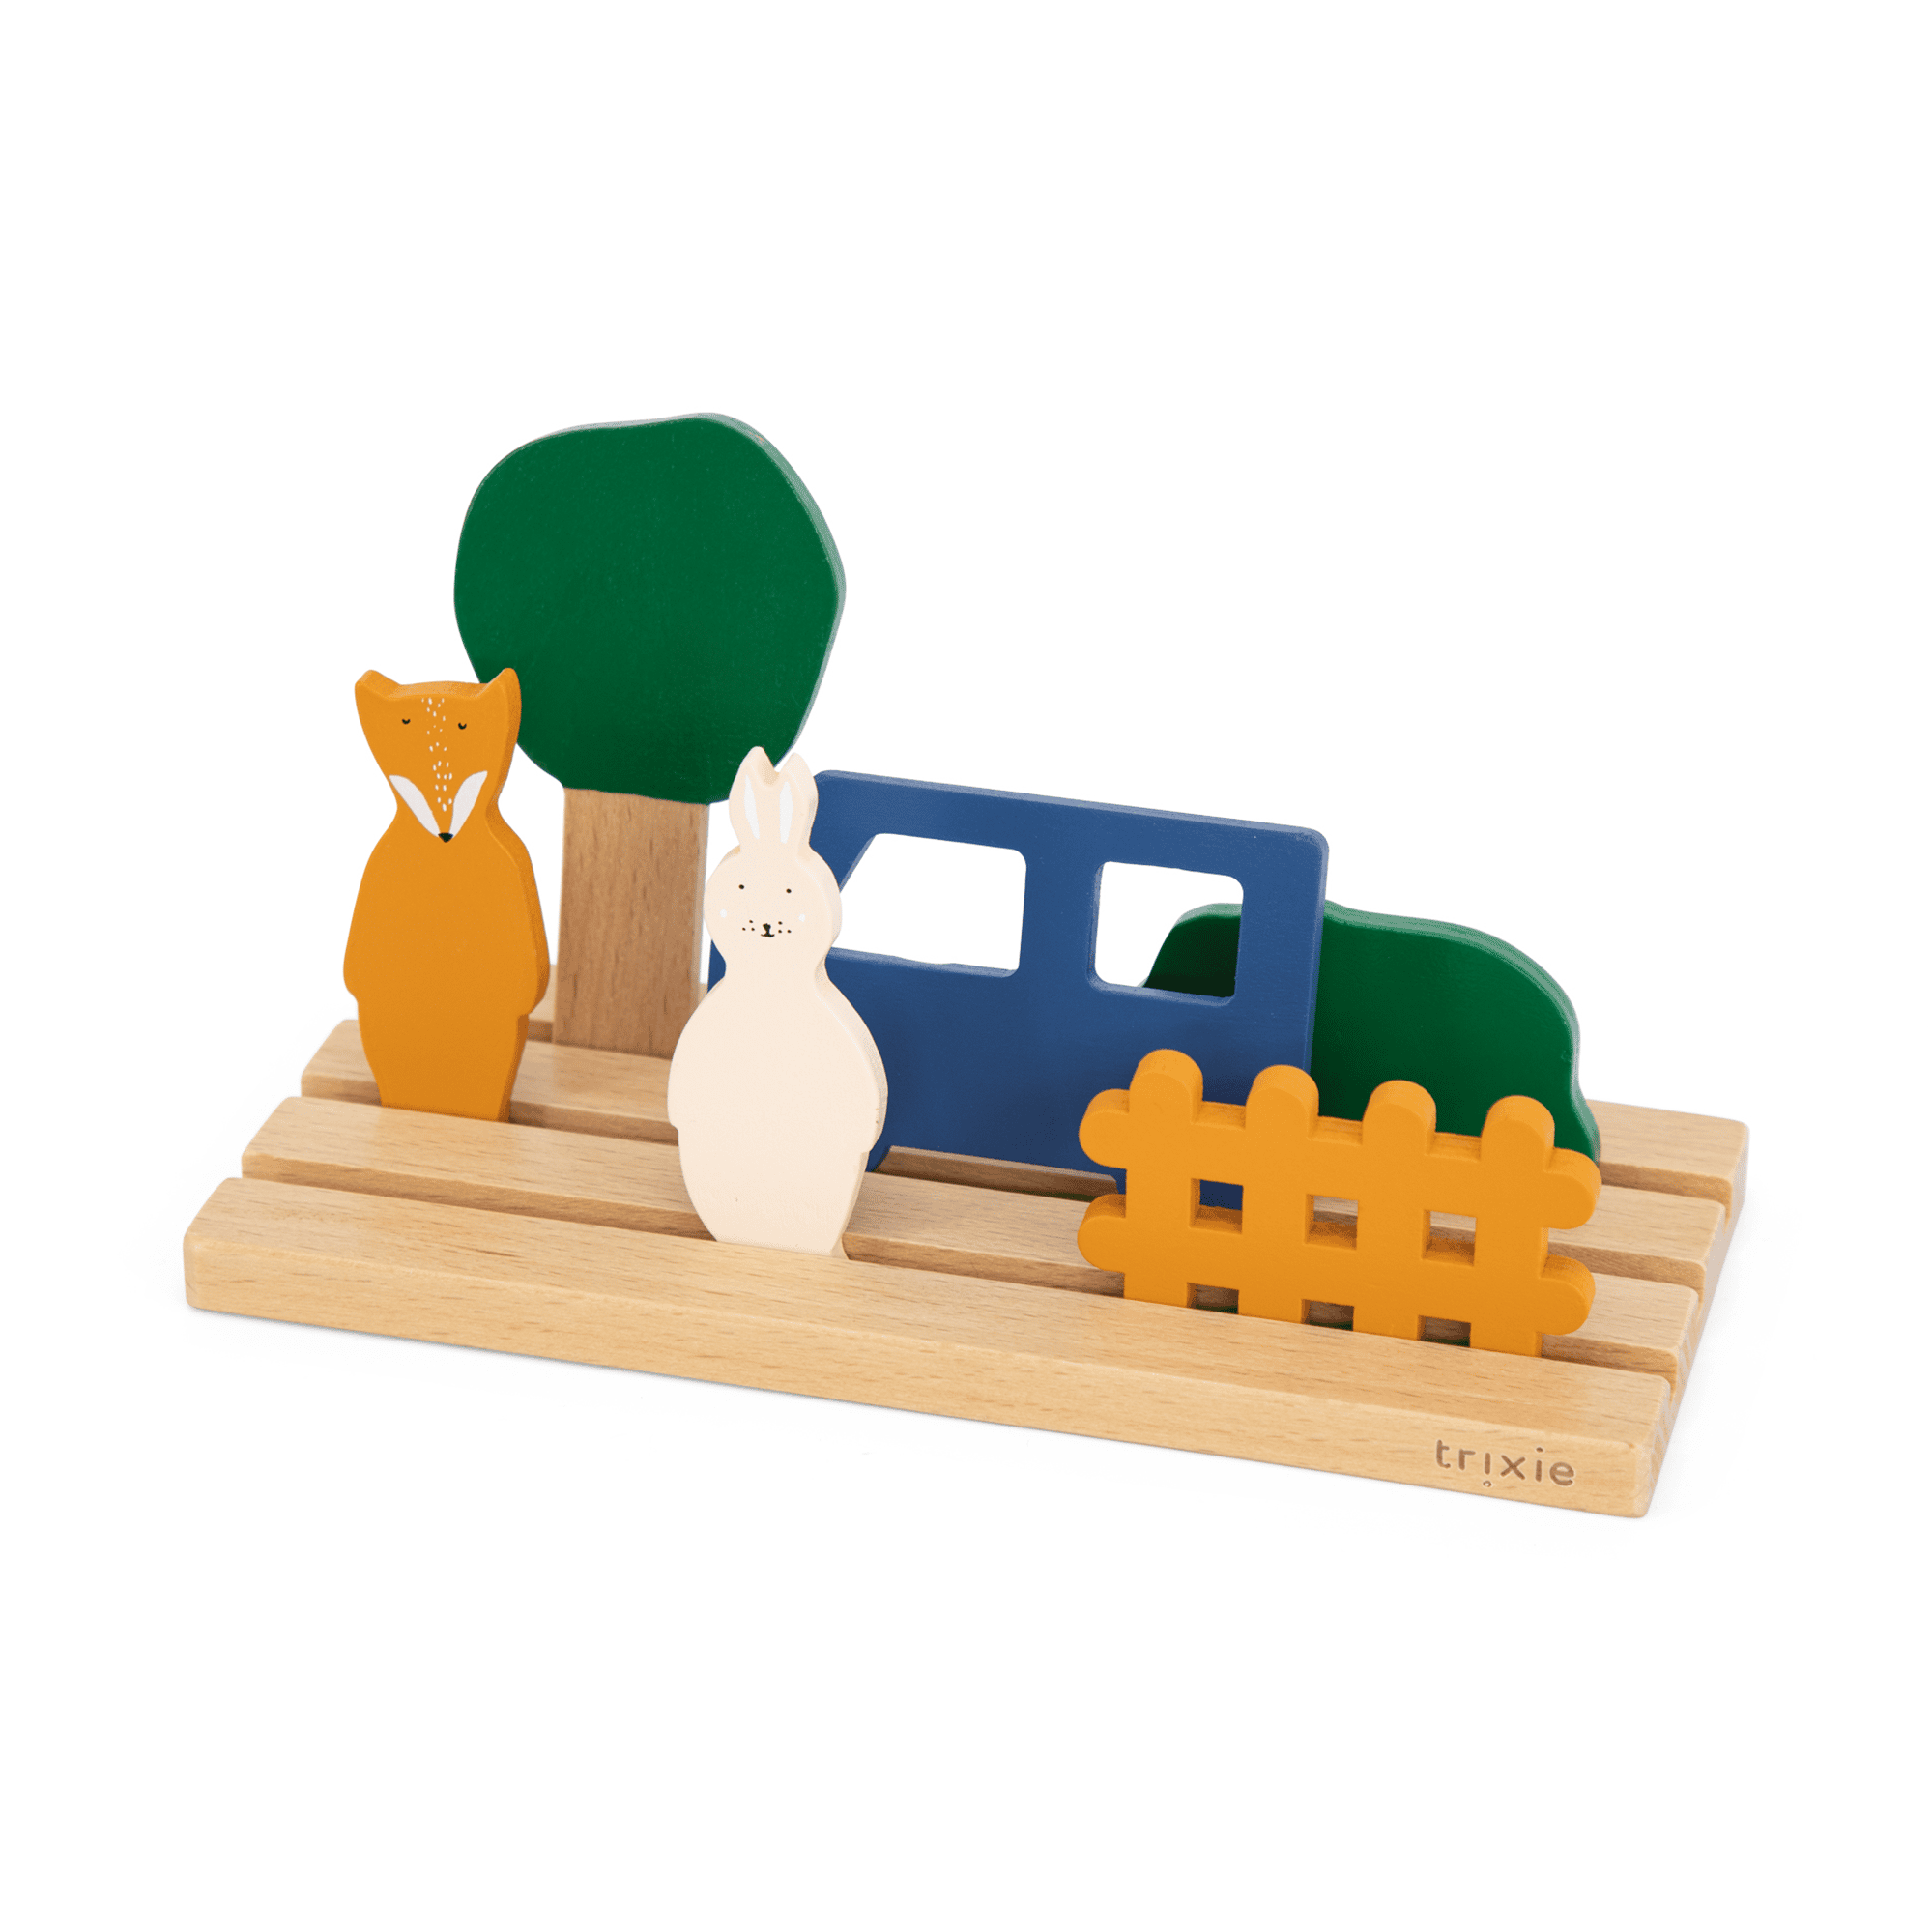 Holzspielzeug für räumliches Denken trixie Mehrfarbig 2000585163303 1